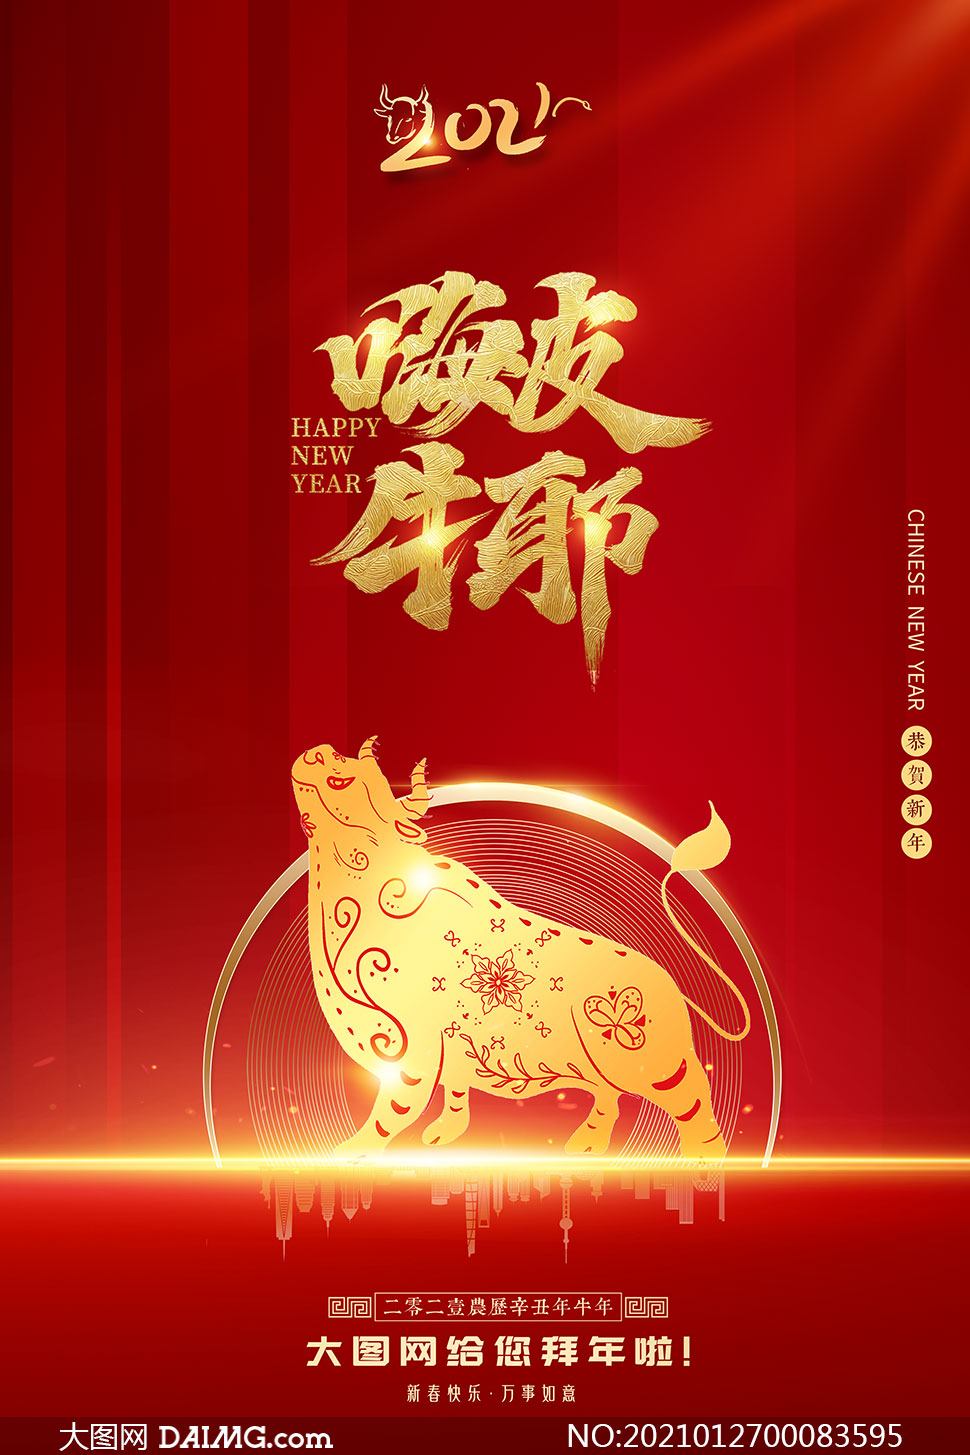 2021牛年春节快乐海报设计psd素材